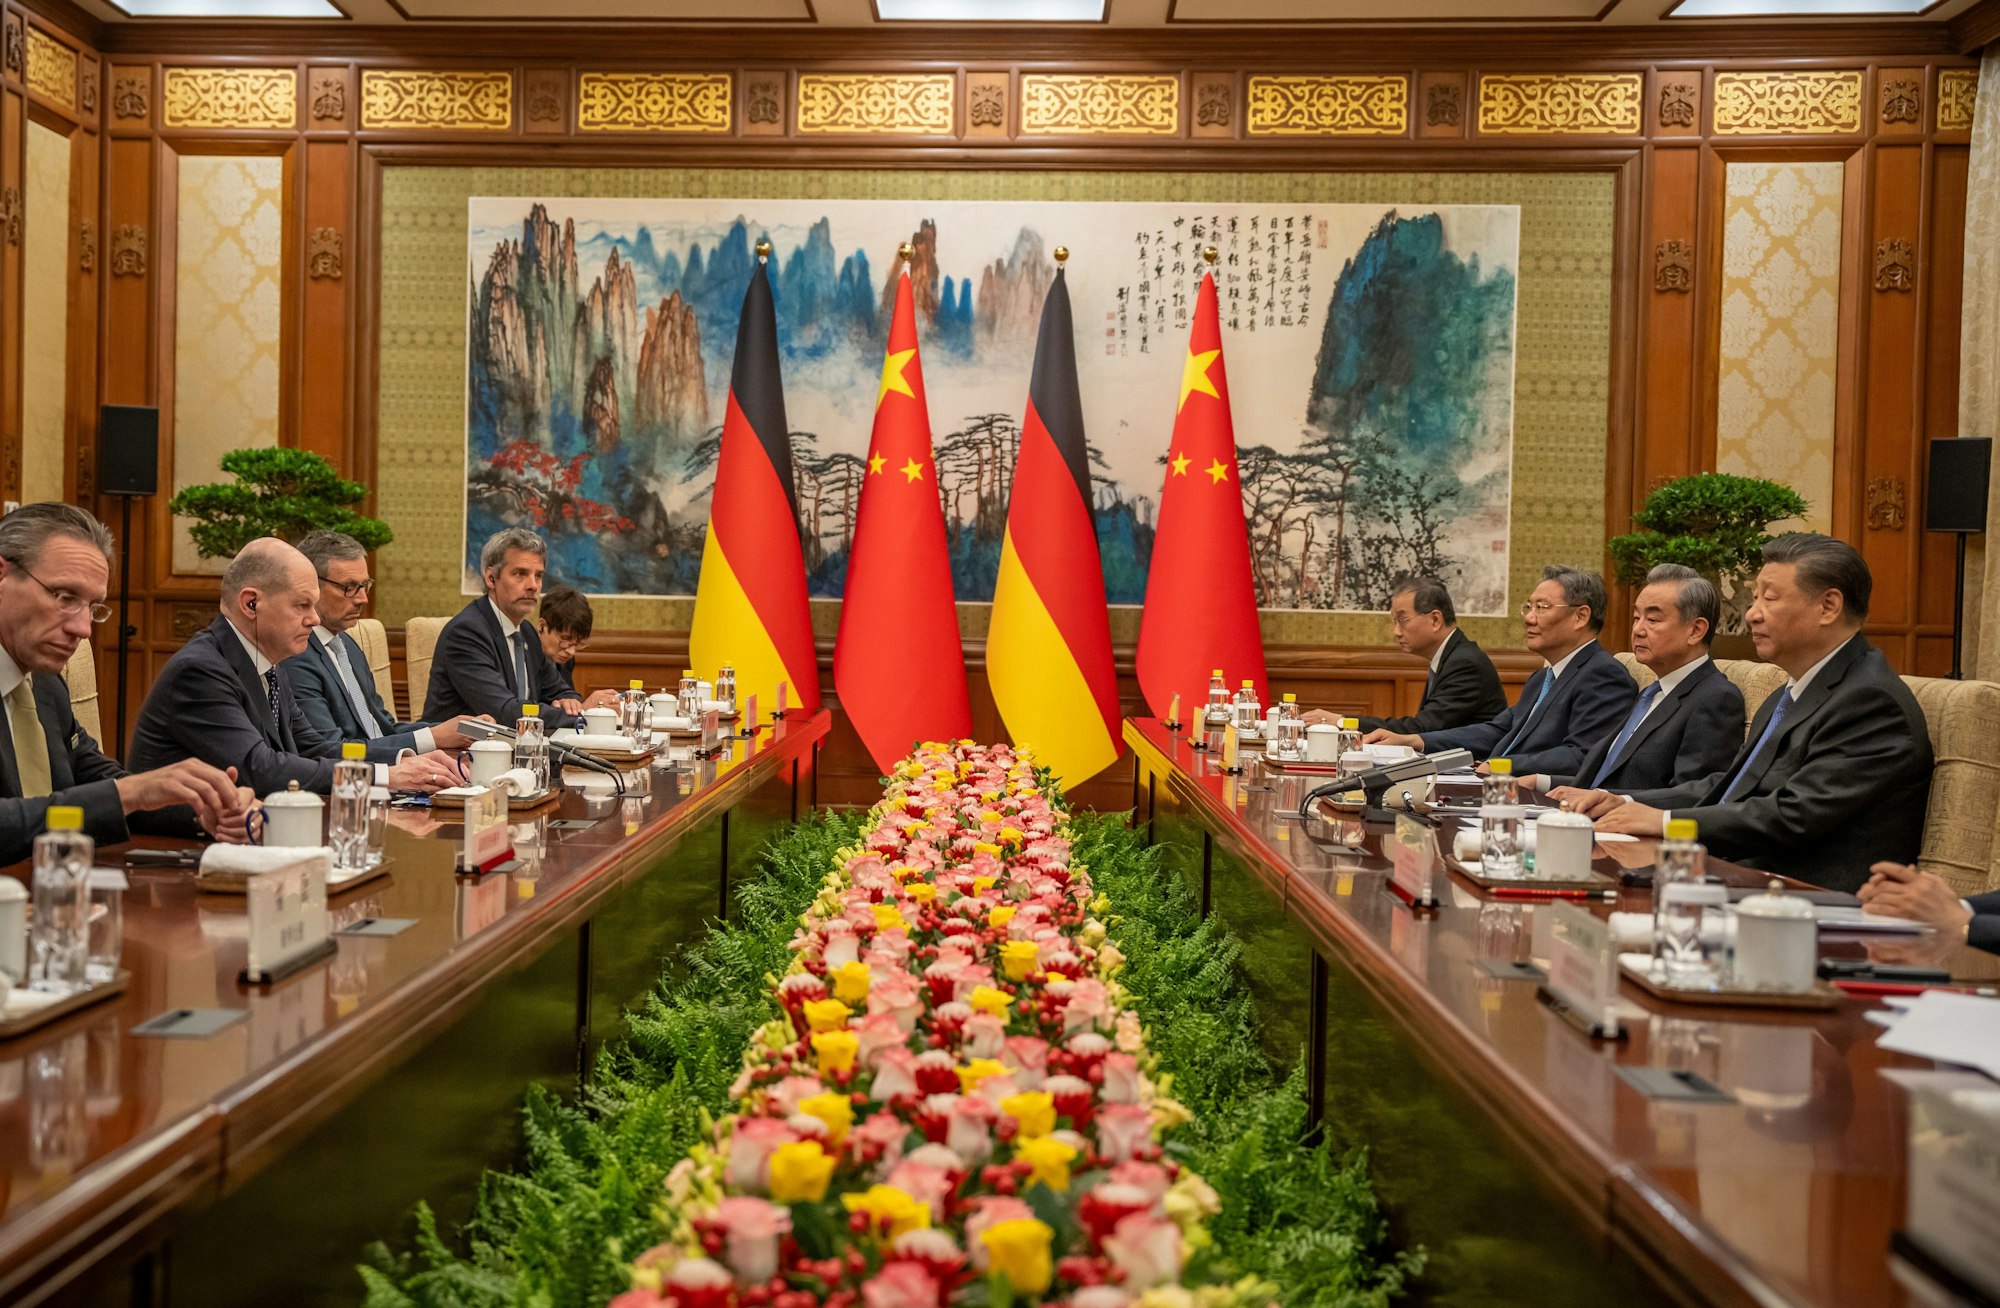 Bundeskanzler Olaf Scholz (SPD) sitzt gegenüber von Xi Jinping, Staatspräsident von China, bei Gesprächen im Staatsgästehaus.